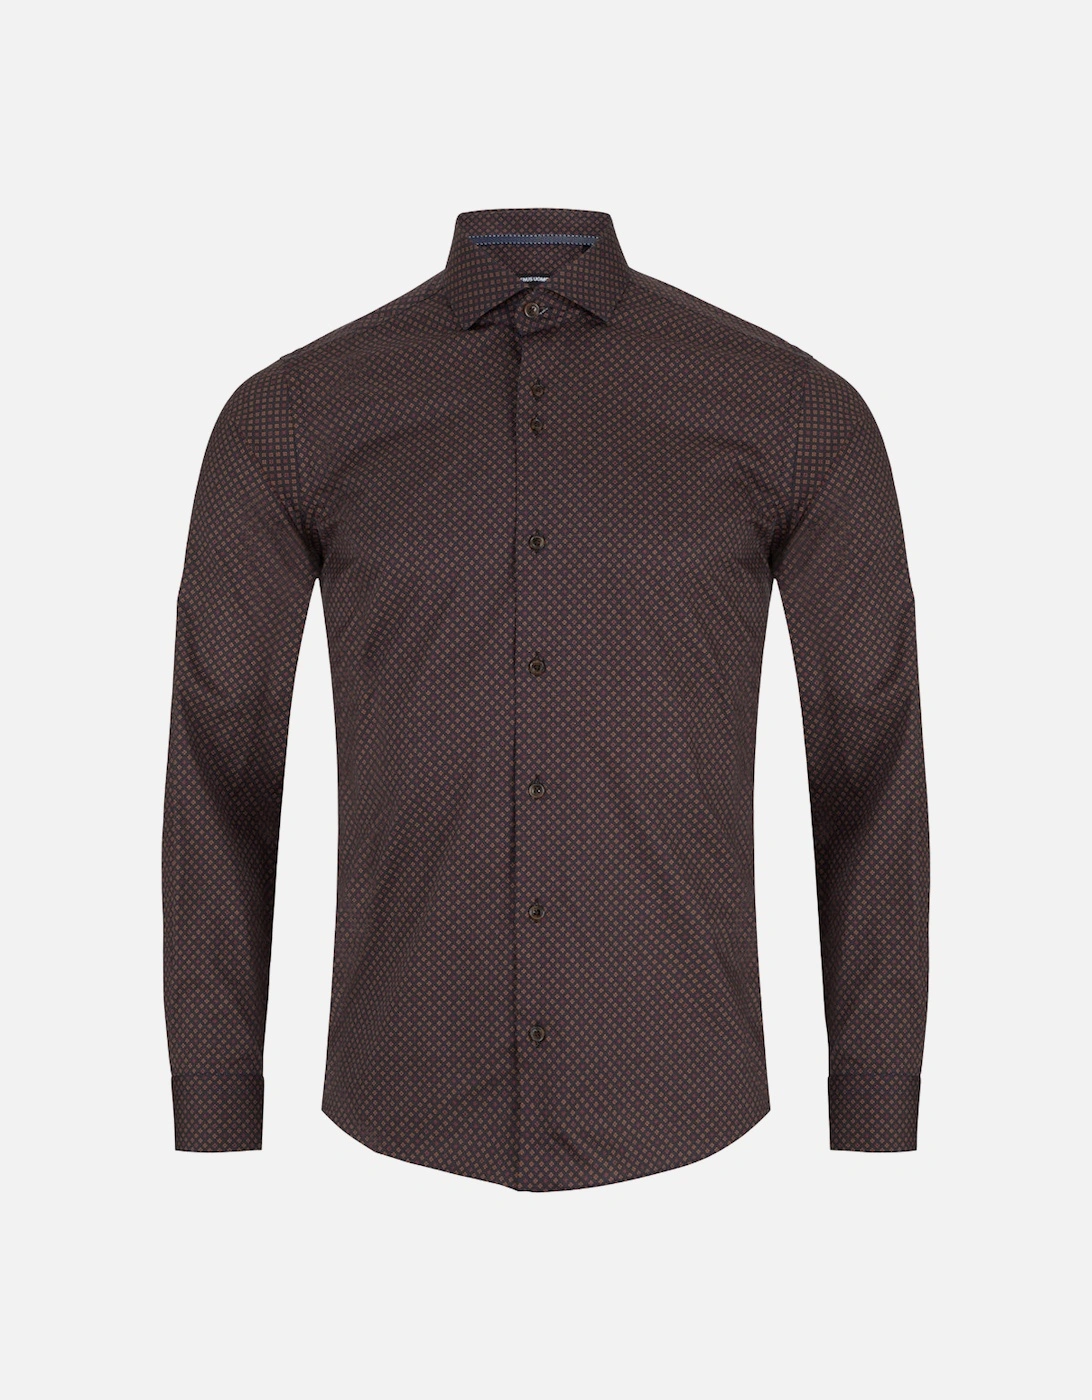 Semi Formal Shirt 48 Black / Brown, 4 of 3